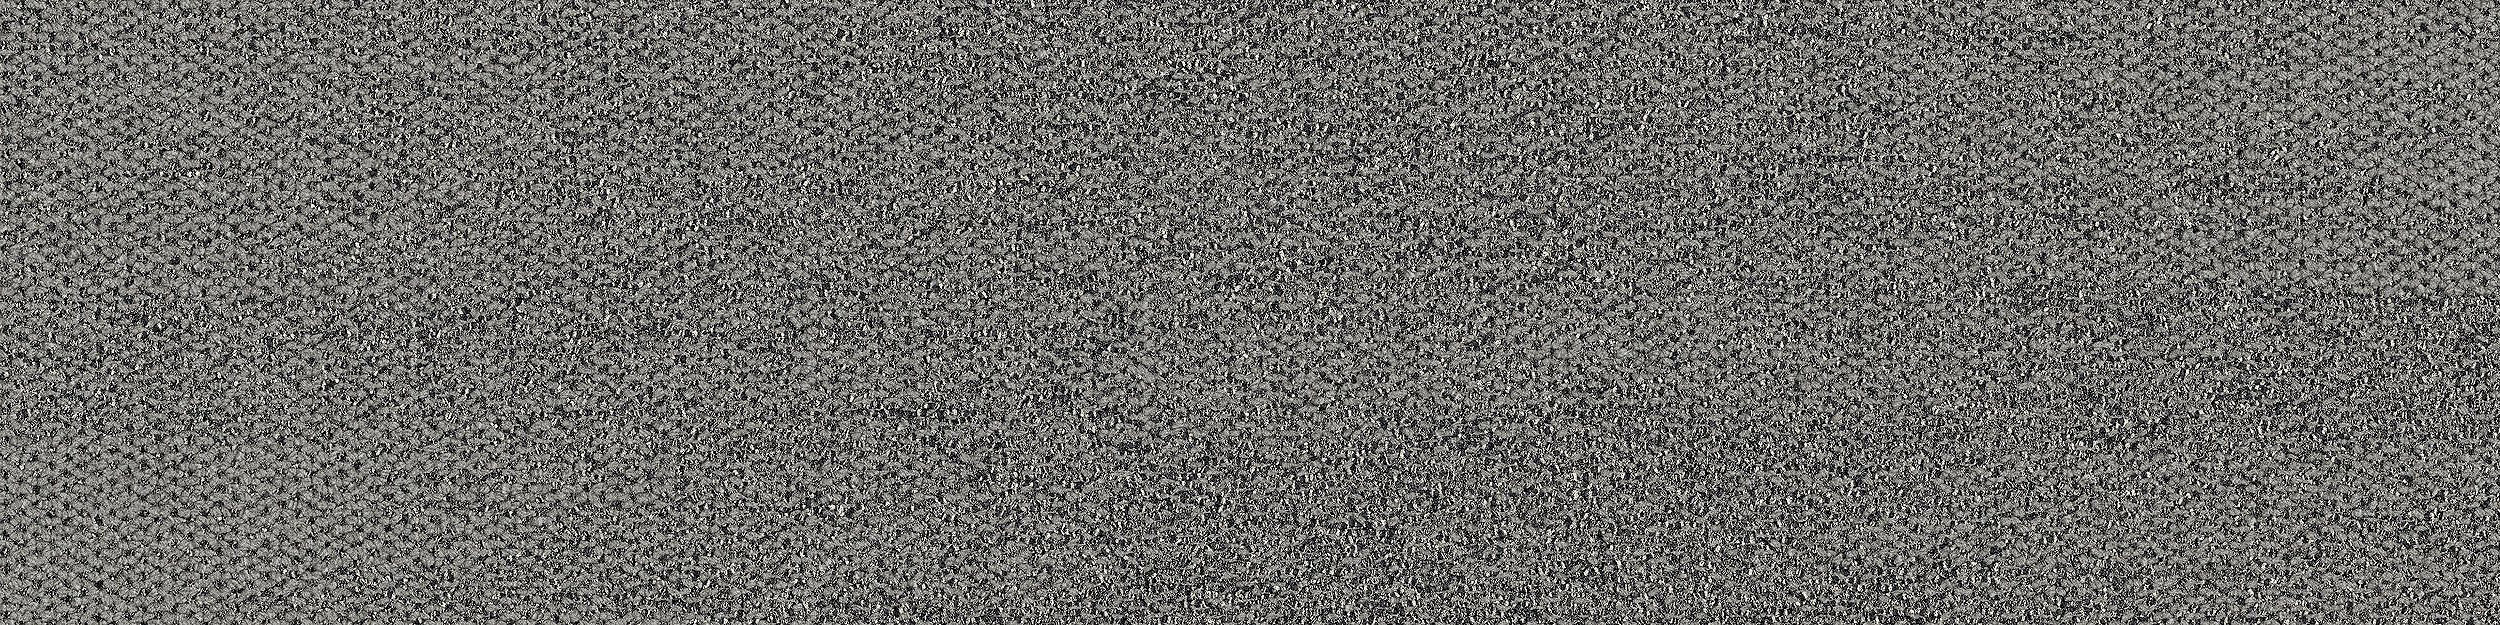 Open Air 410 Carpet Tile In Flannel imagen número 5